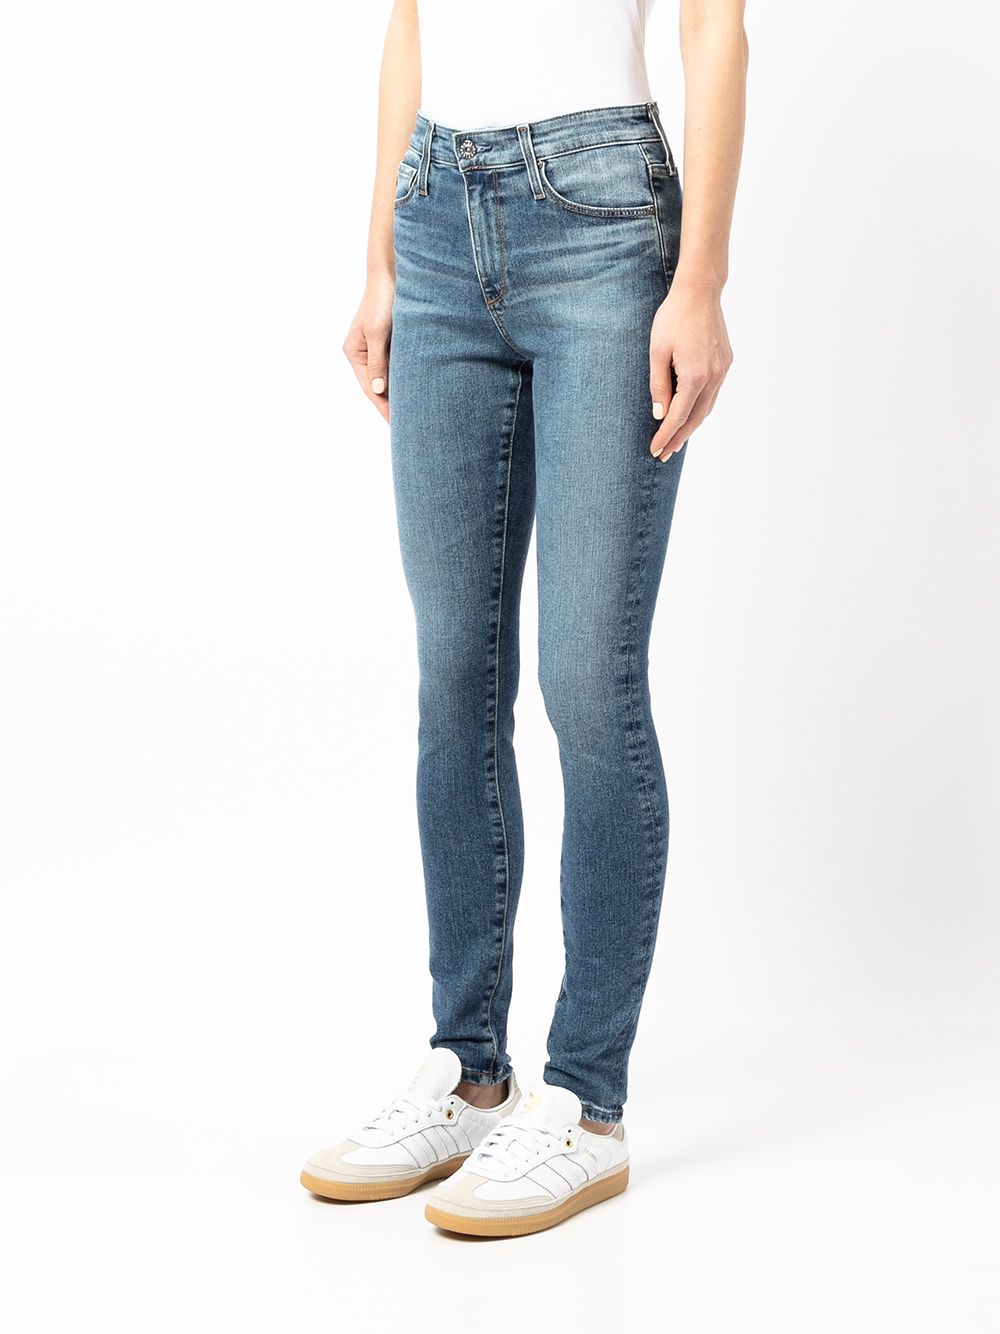 фото Ag jeans узкие джинсы средней посадки